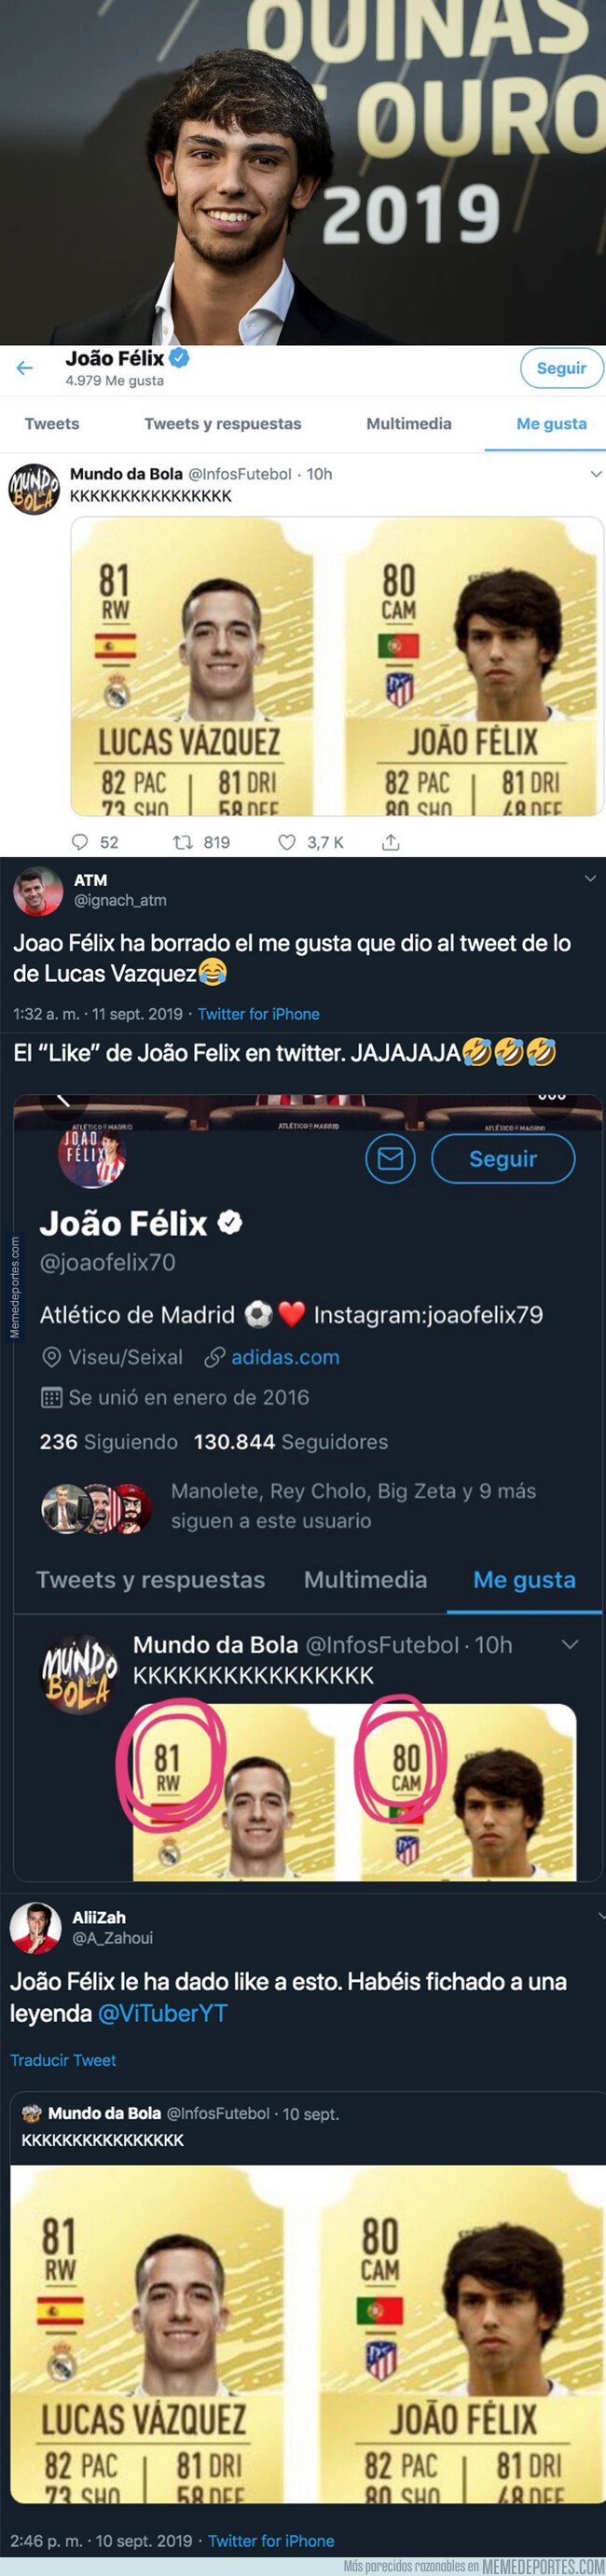 1085596 - El 'like' más polémico de Joao Felix en Twitter que ha revolucionado todo internet